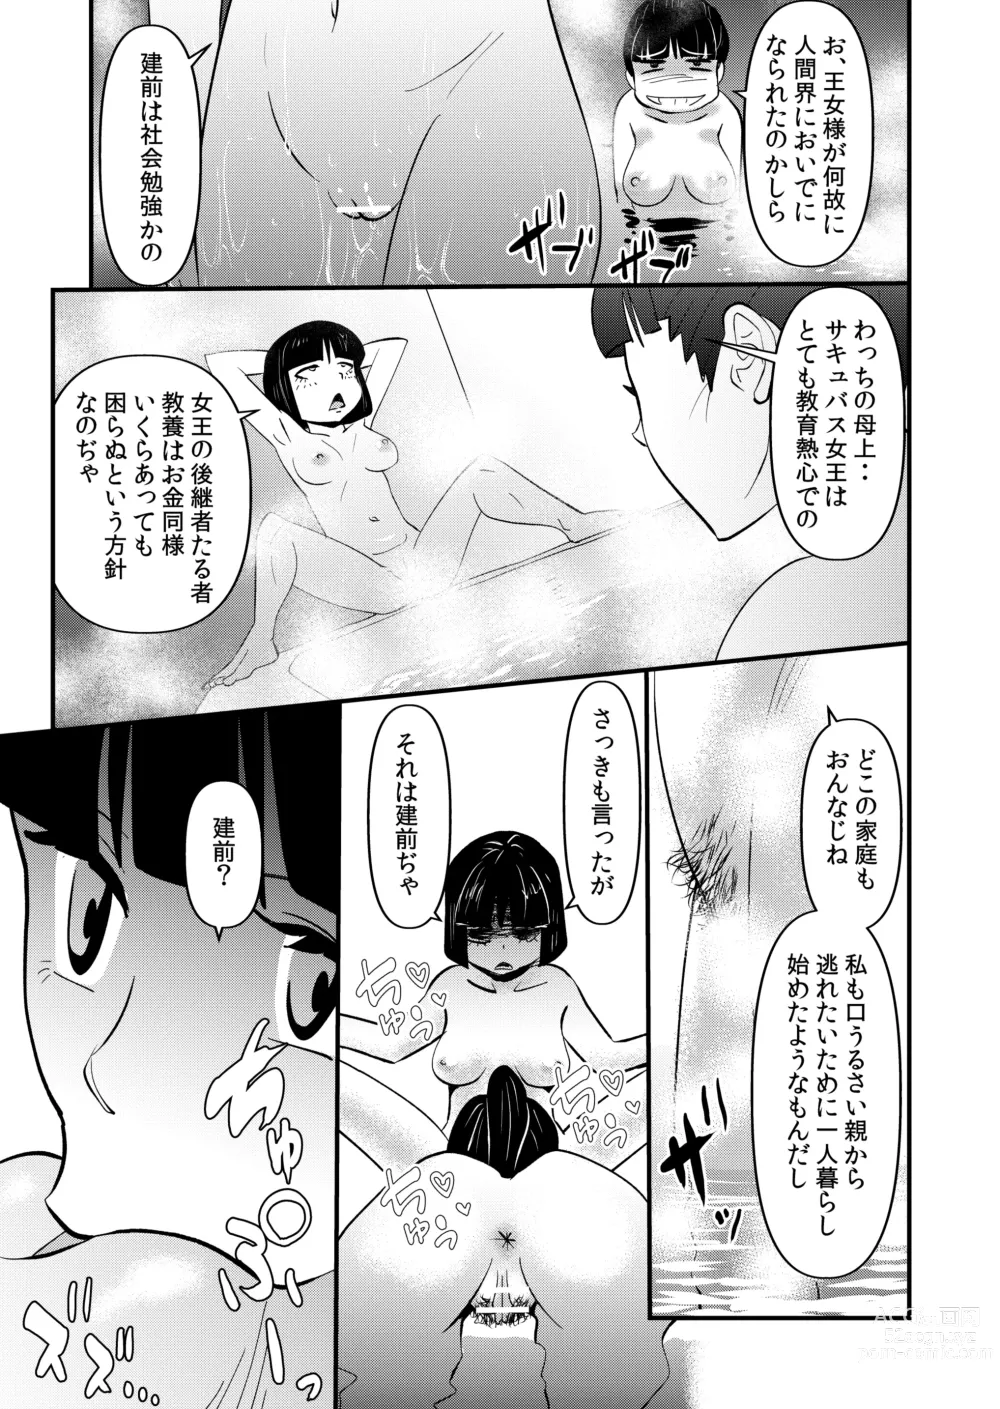 Page 23 of doujinshi Inma JK Succubus no Yabou